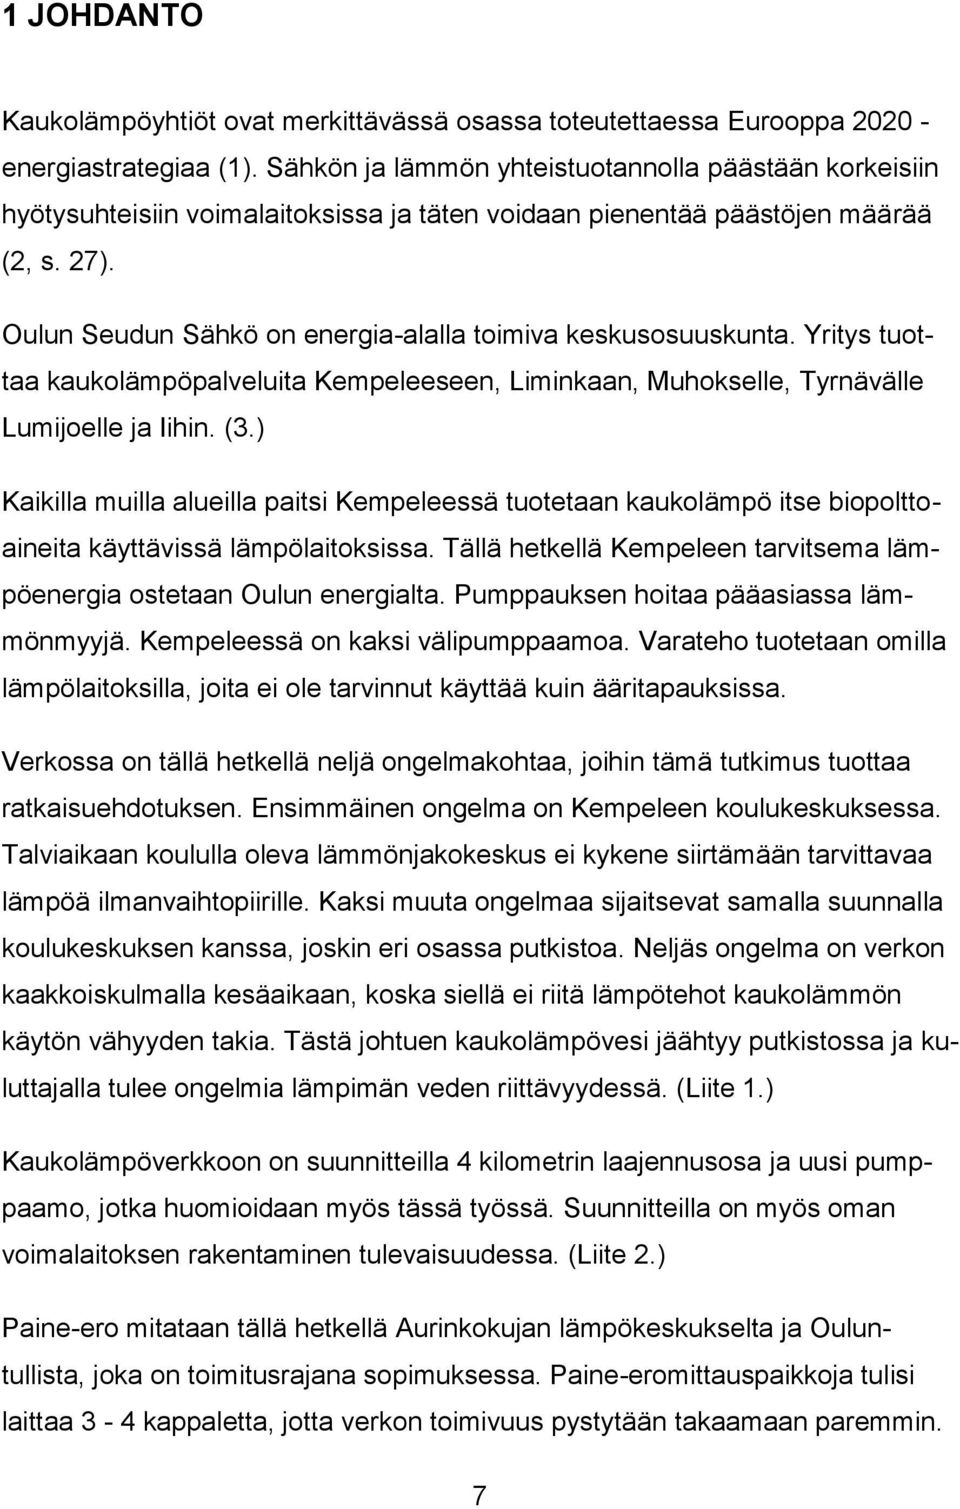 Oulun Seudun Sähkö on energia-alalla toimiva keskusosuuskunta. Yritys tuottaa kaukolämpöpalveluita Kempeleeseen, Liminkaan, Muhokselle, Tyrnävälle Lumijoelle ja Iihin. (3.